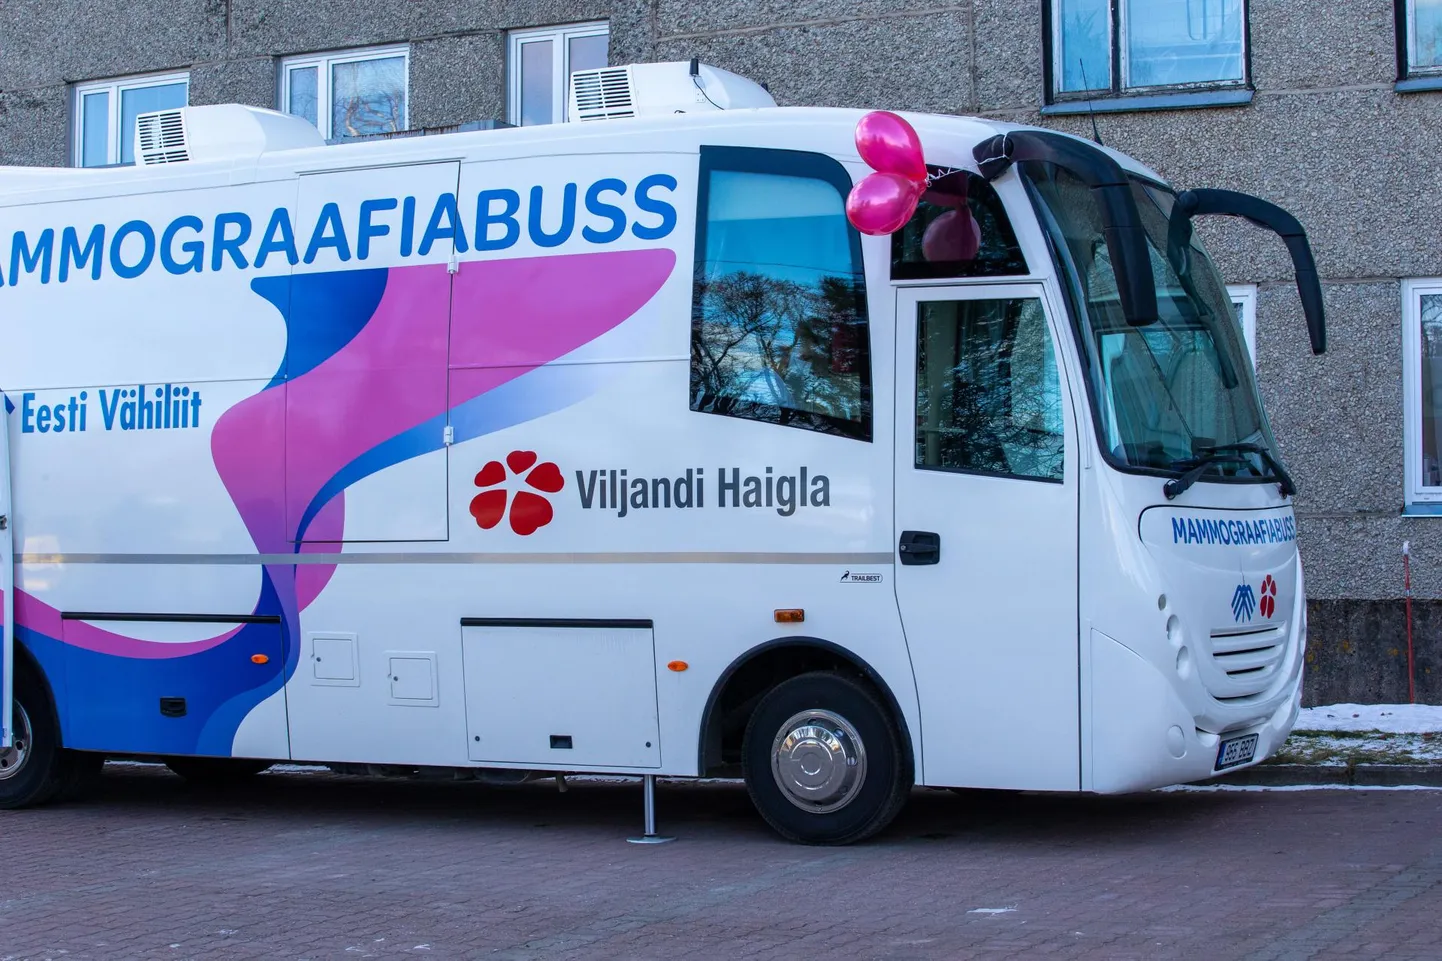 Novembris ja detsembris peatub mammograafiabuss eri paigus Pärnumaal.